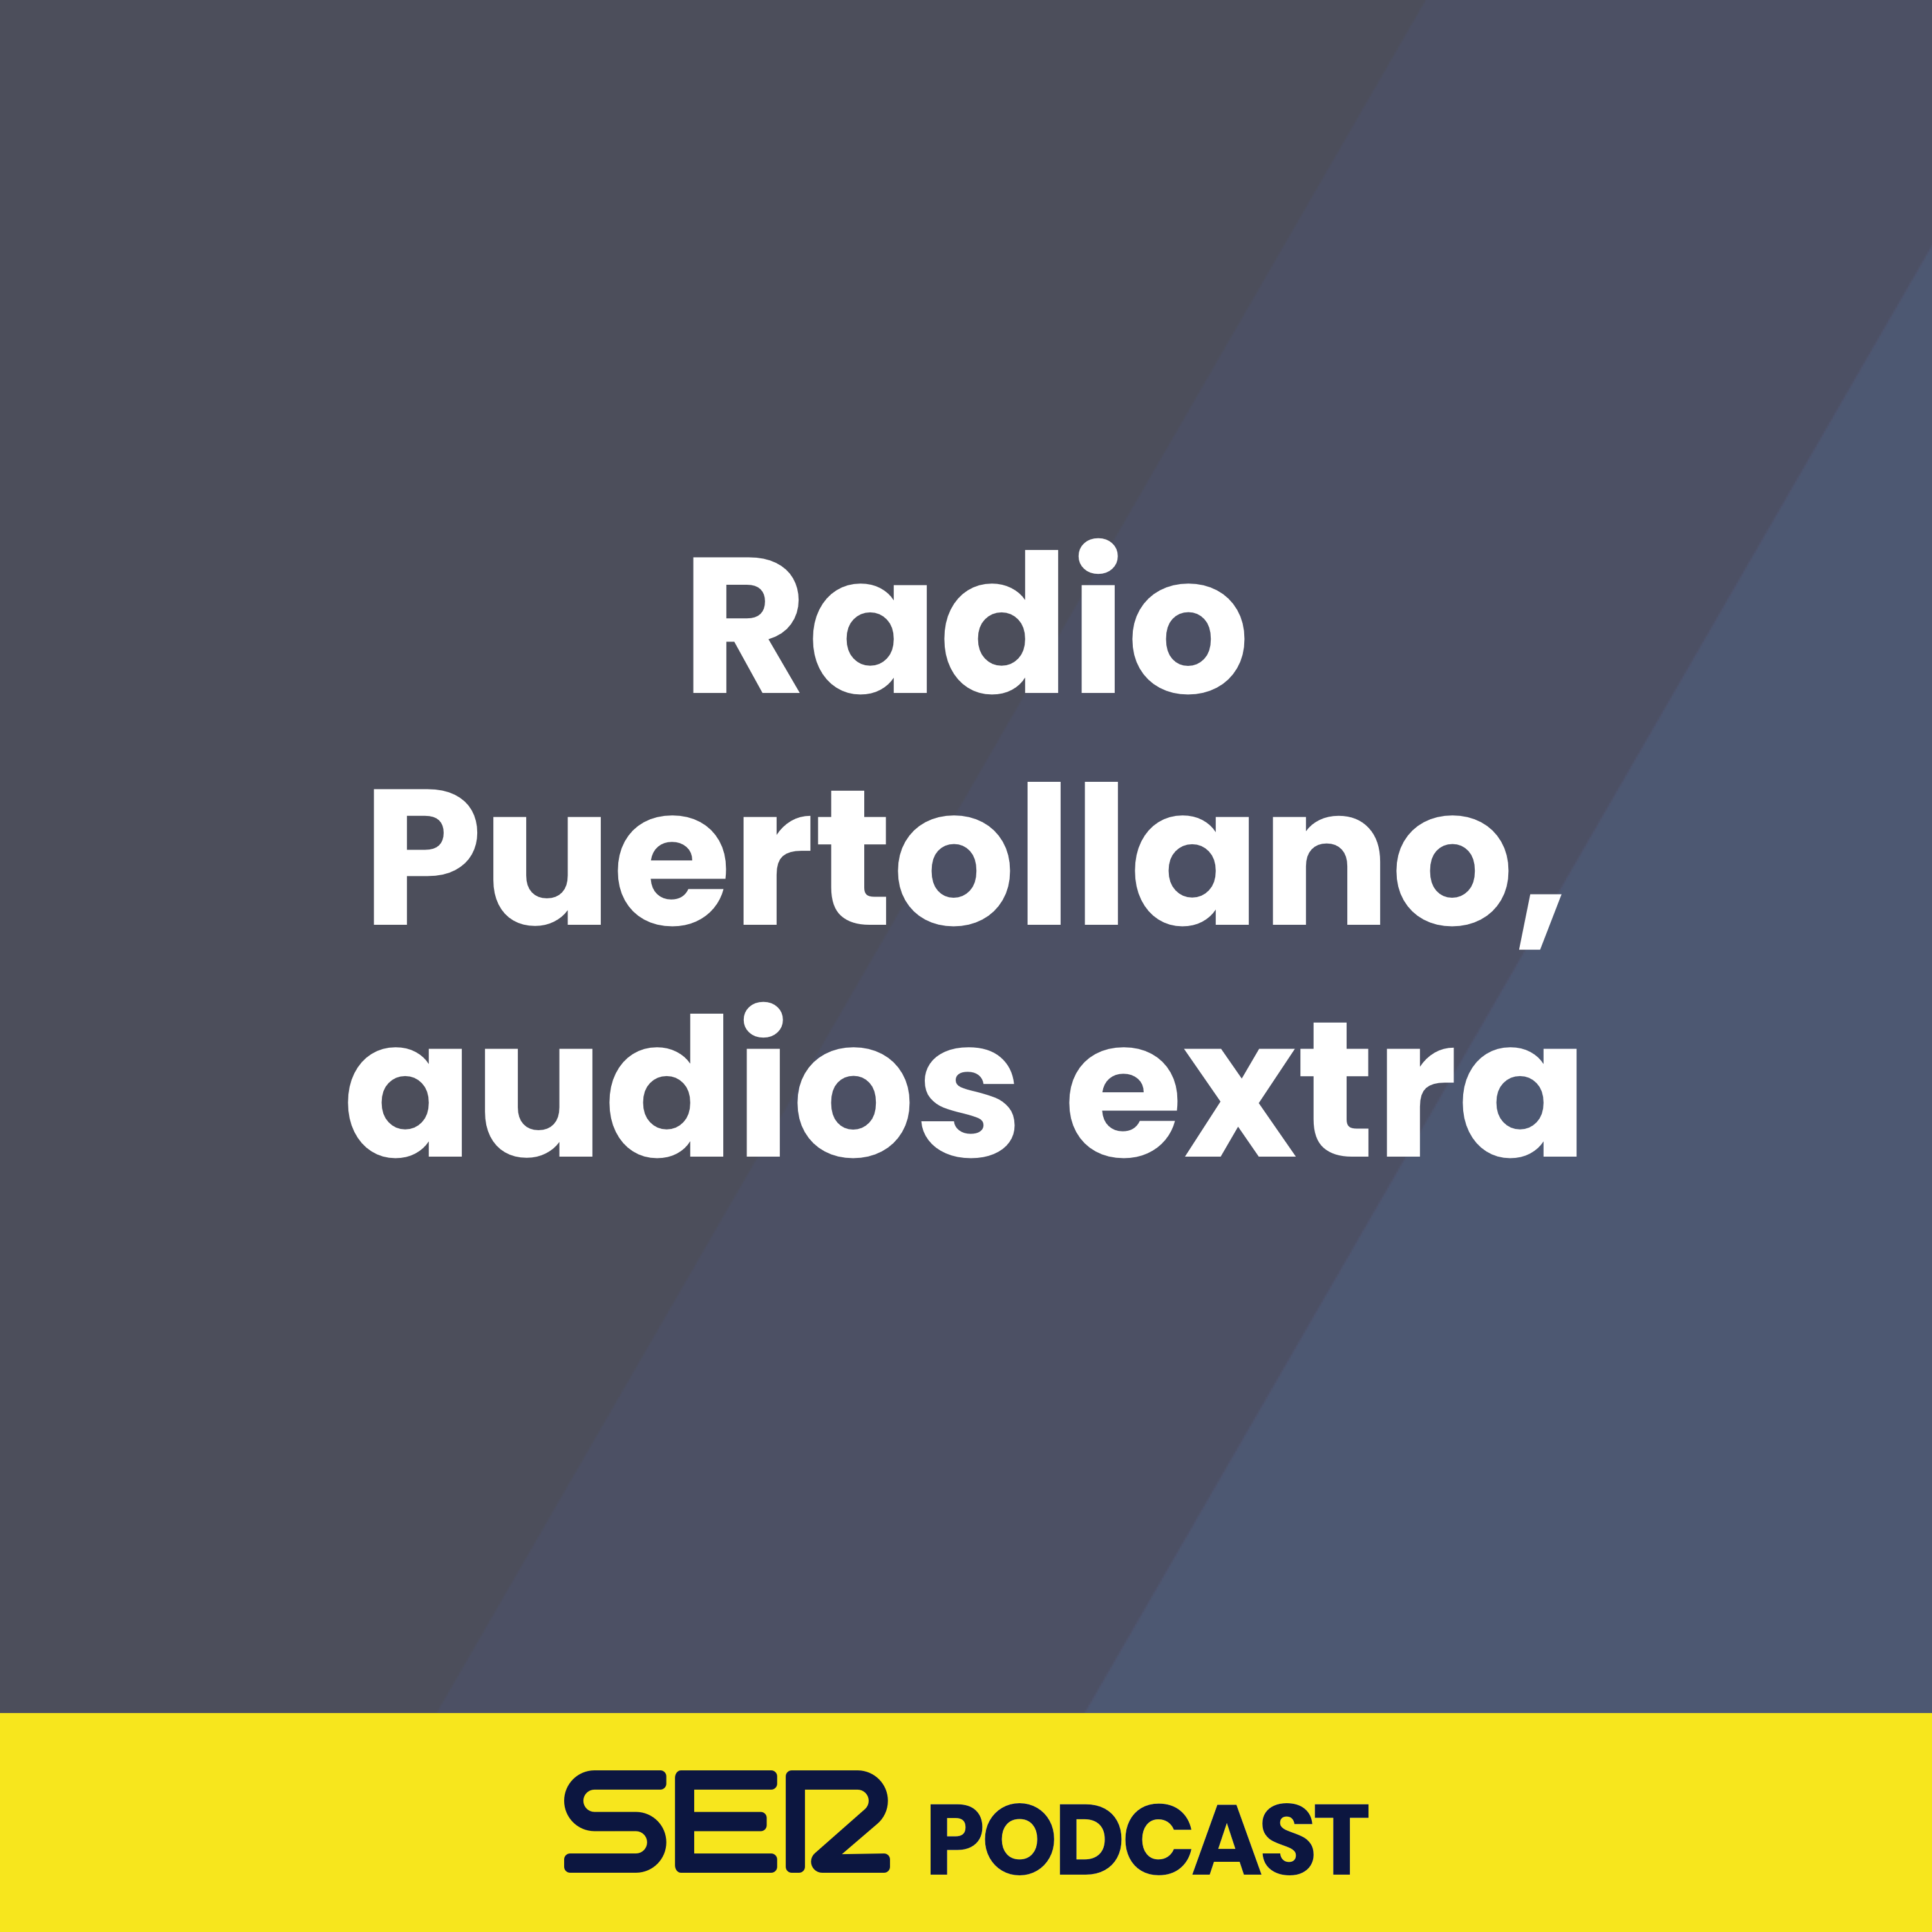 Radio Puertollano, audios extra